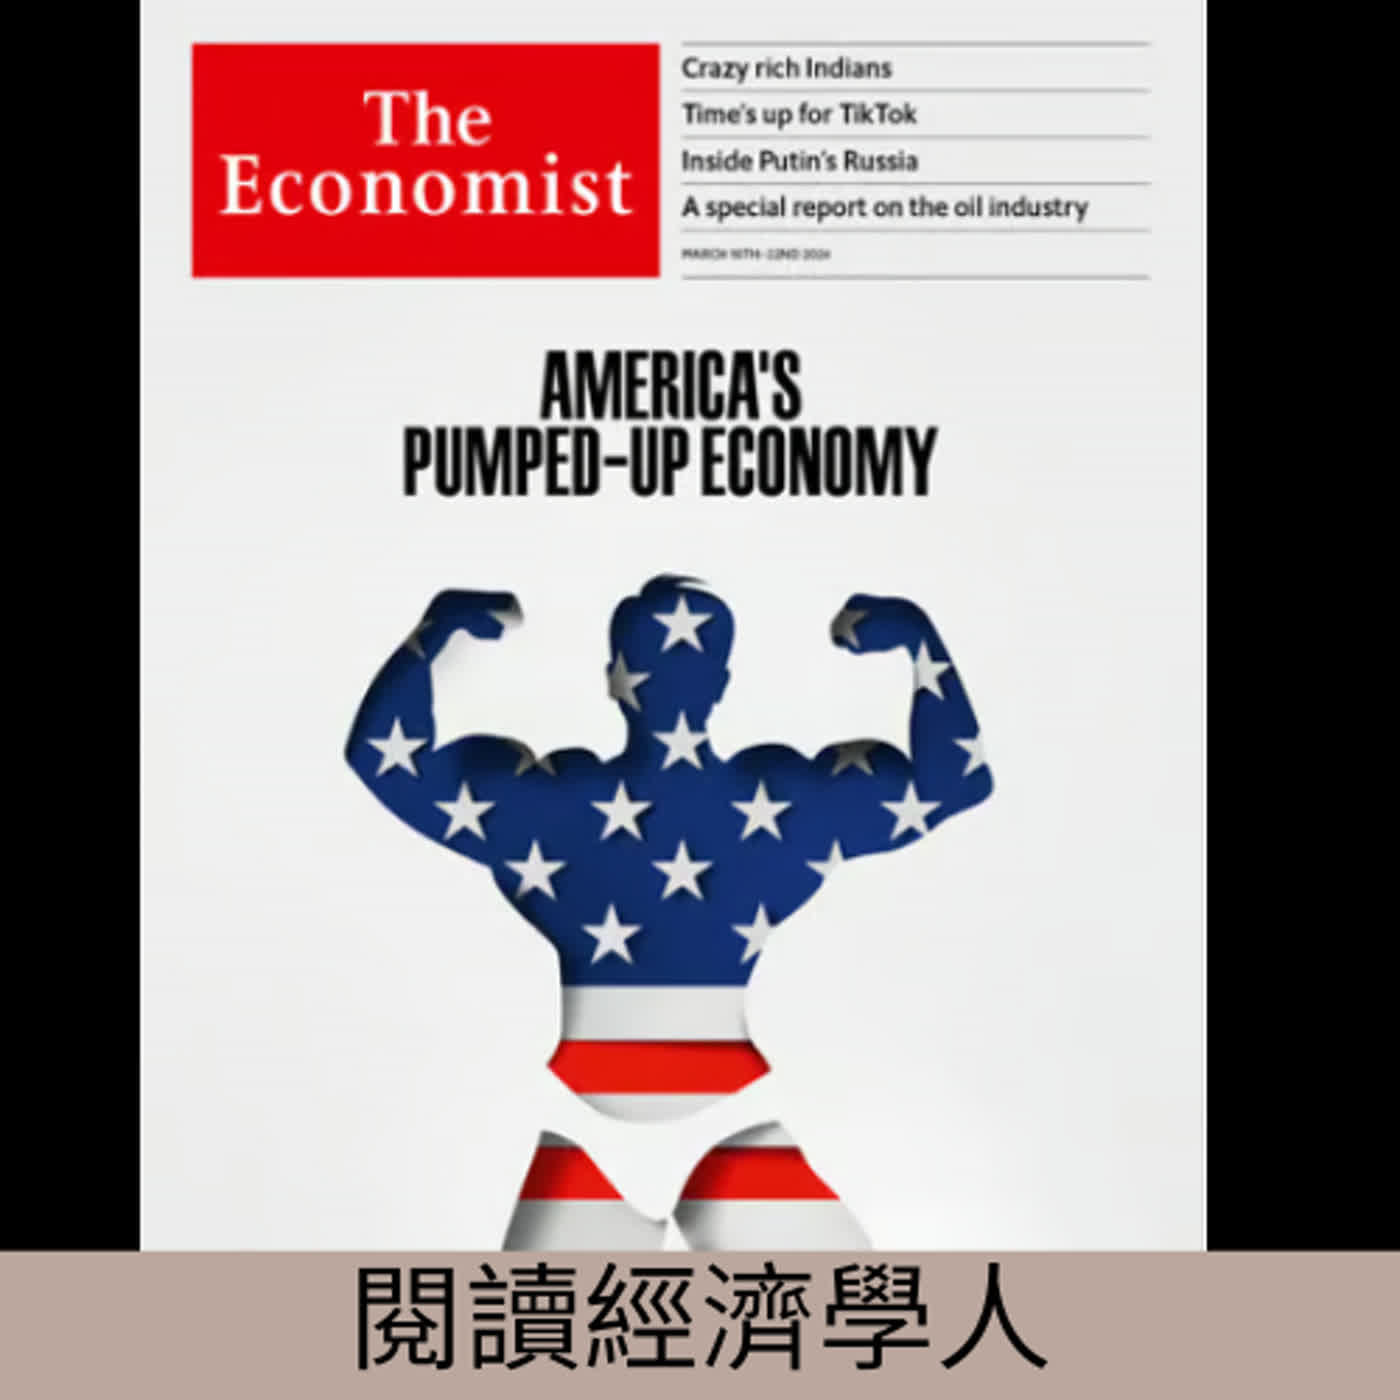 閱讀經濟學人(第集)_美國經濟獨強的原因與可能的風險_20240318